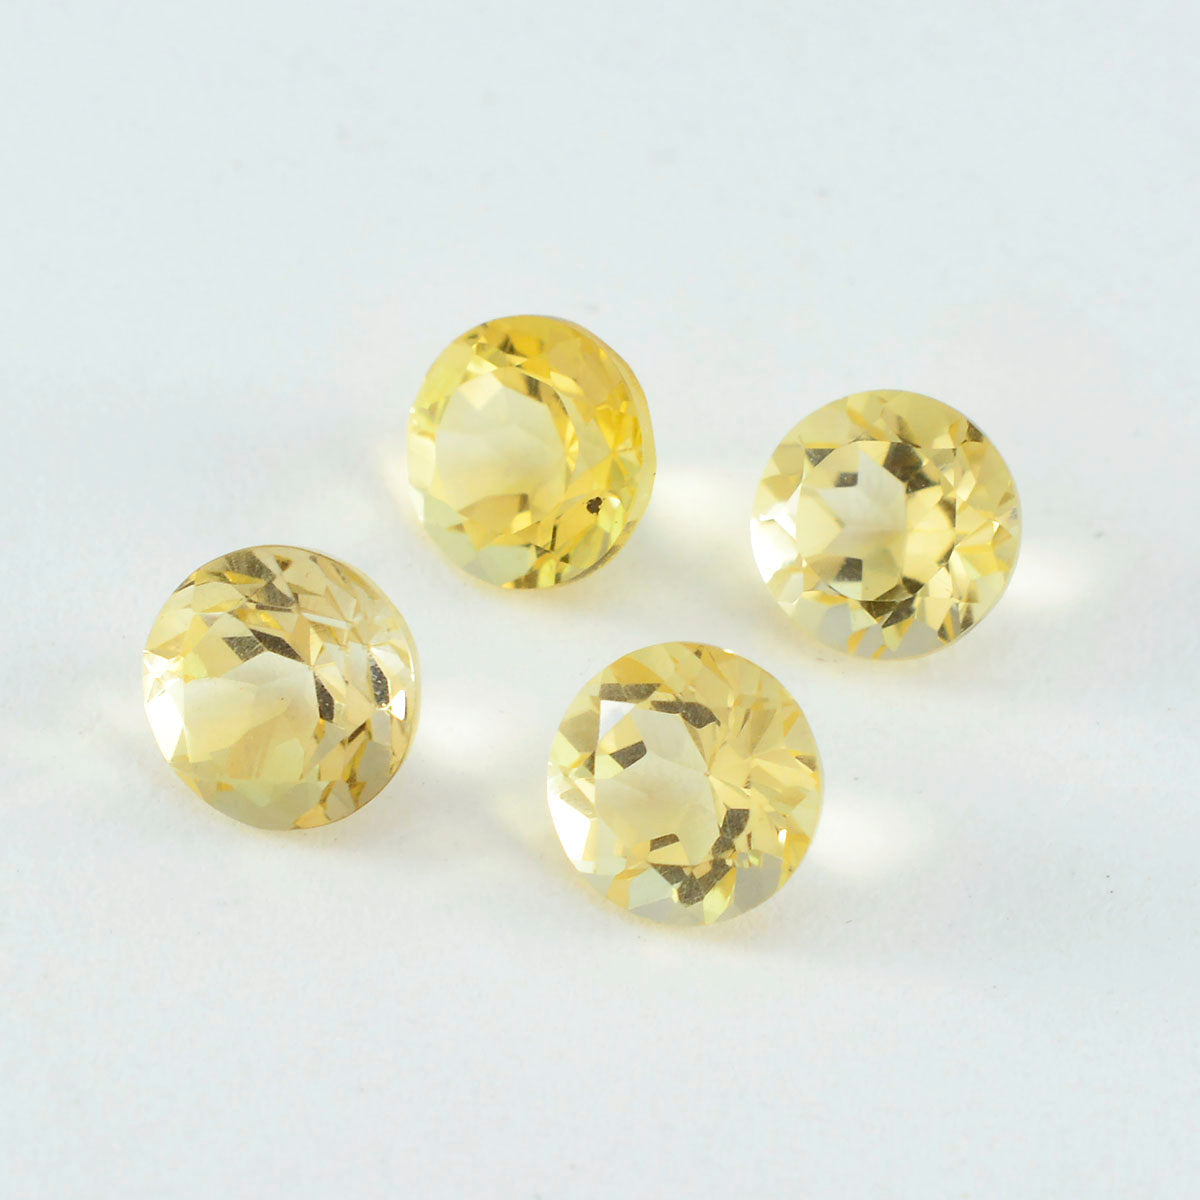 riyogems 1шт натуральный желтый цитрин ограненный 12x12 мм круглая форма качество A1 свободный драгоценный камень